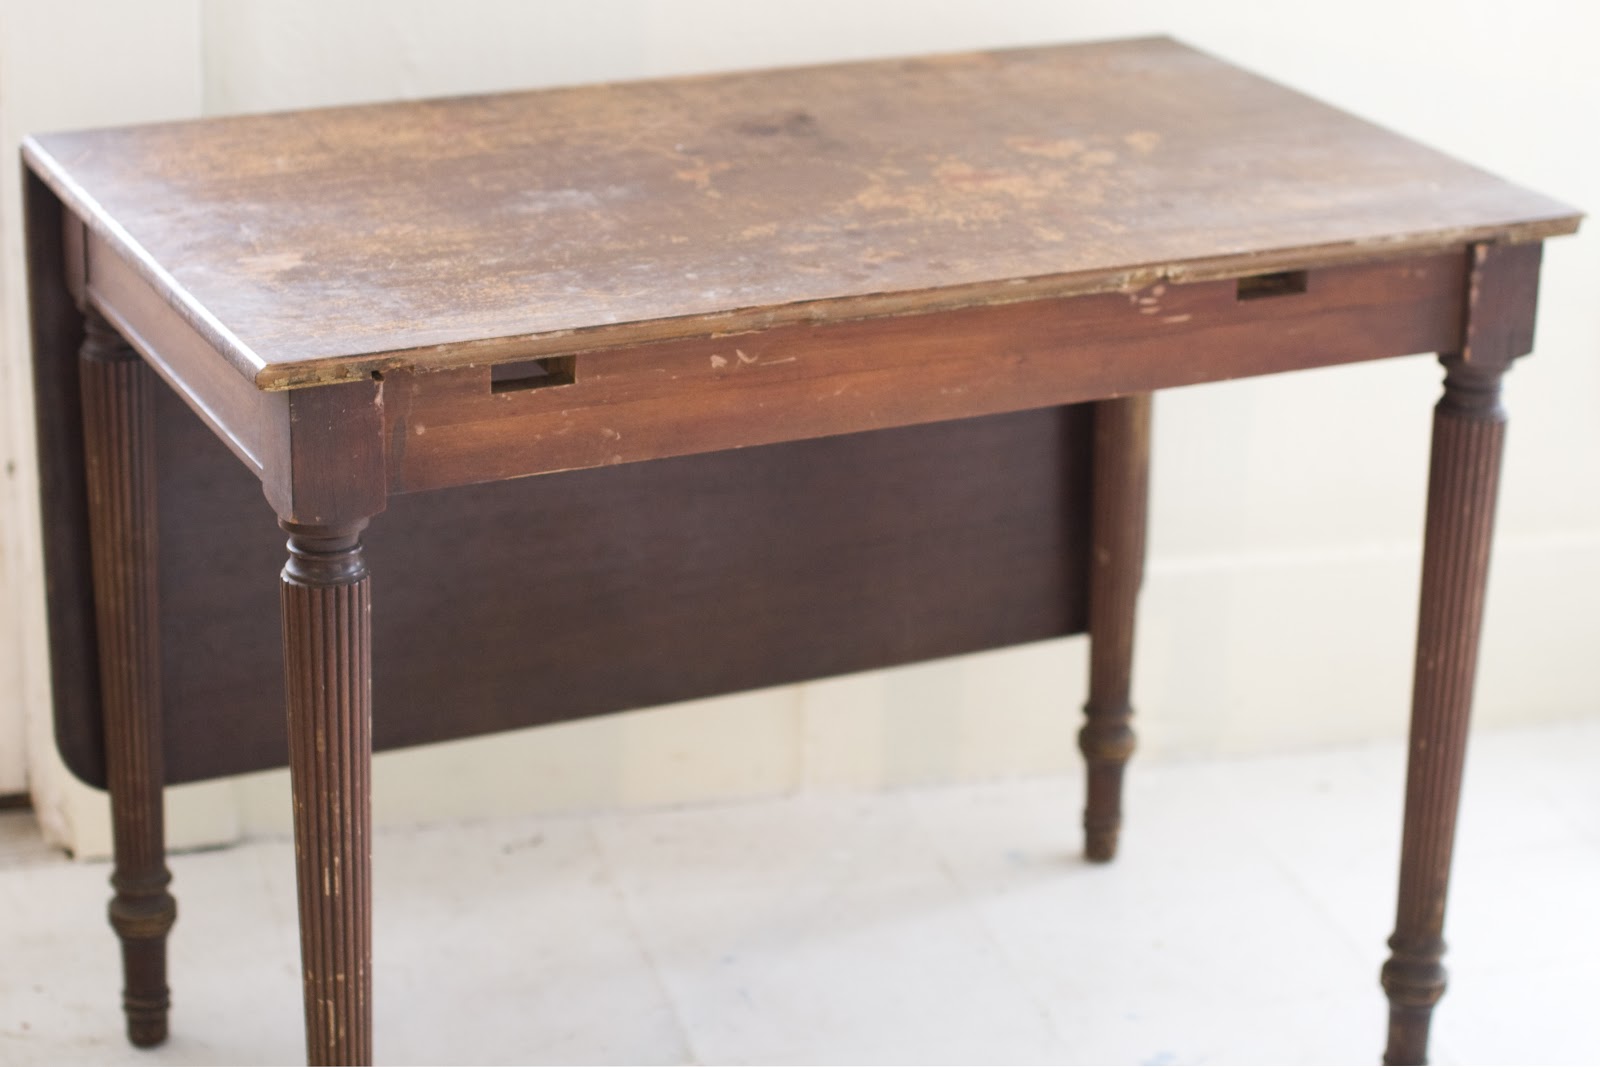 Tables are turning. Старинный столик. Старый стол. Деревянный старый стол боком. Старинный стол сбоку.